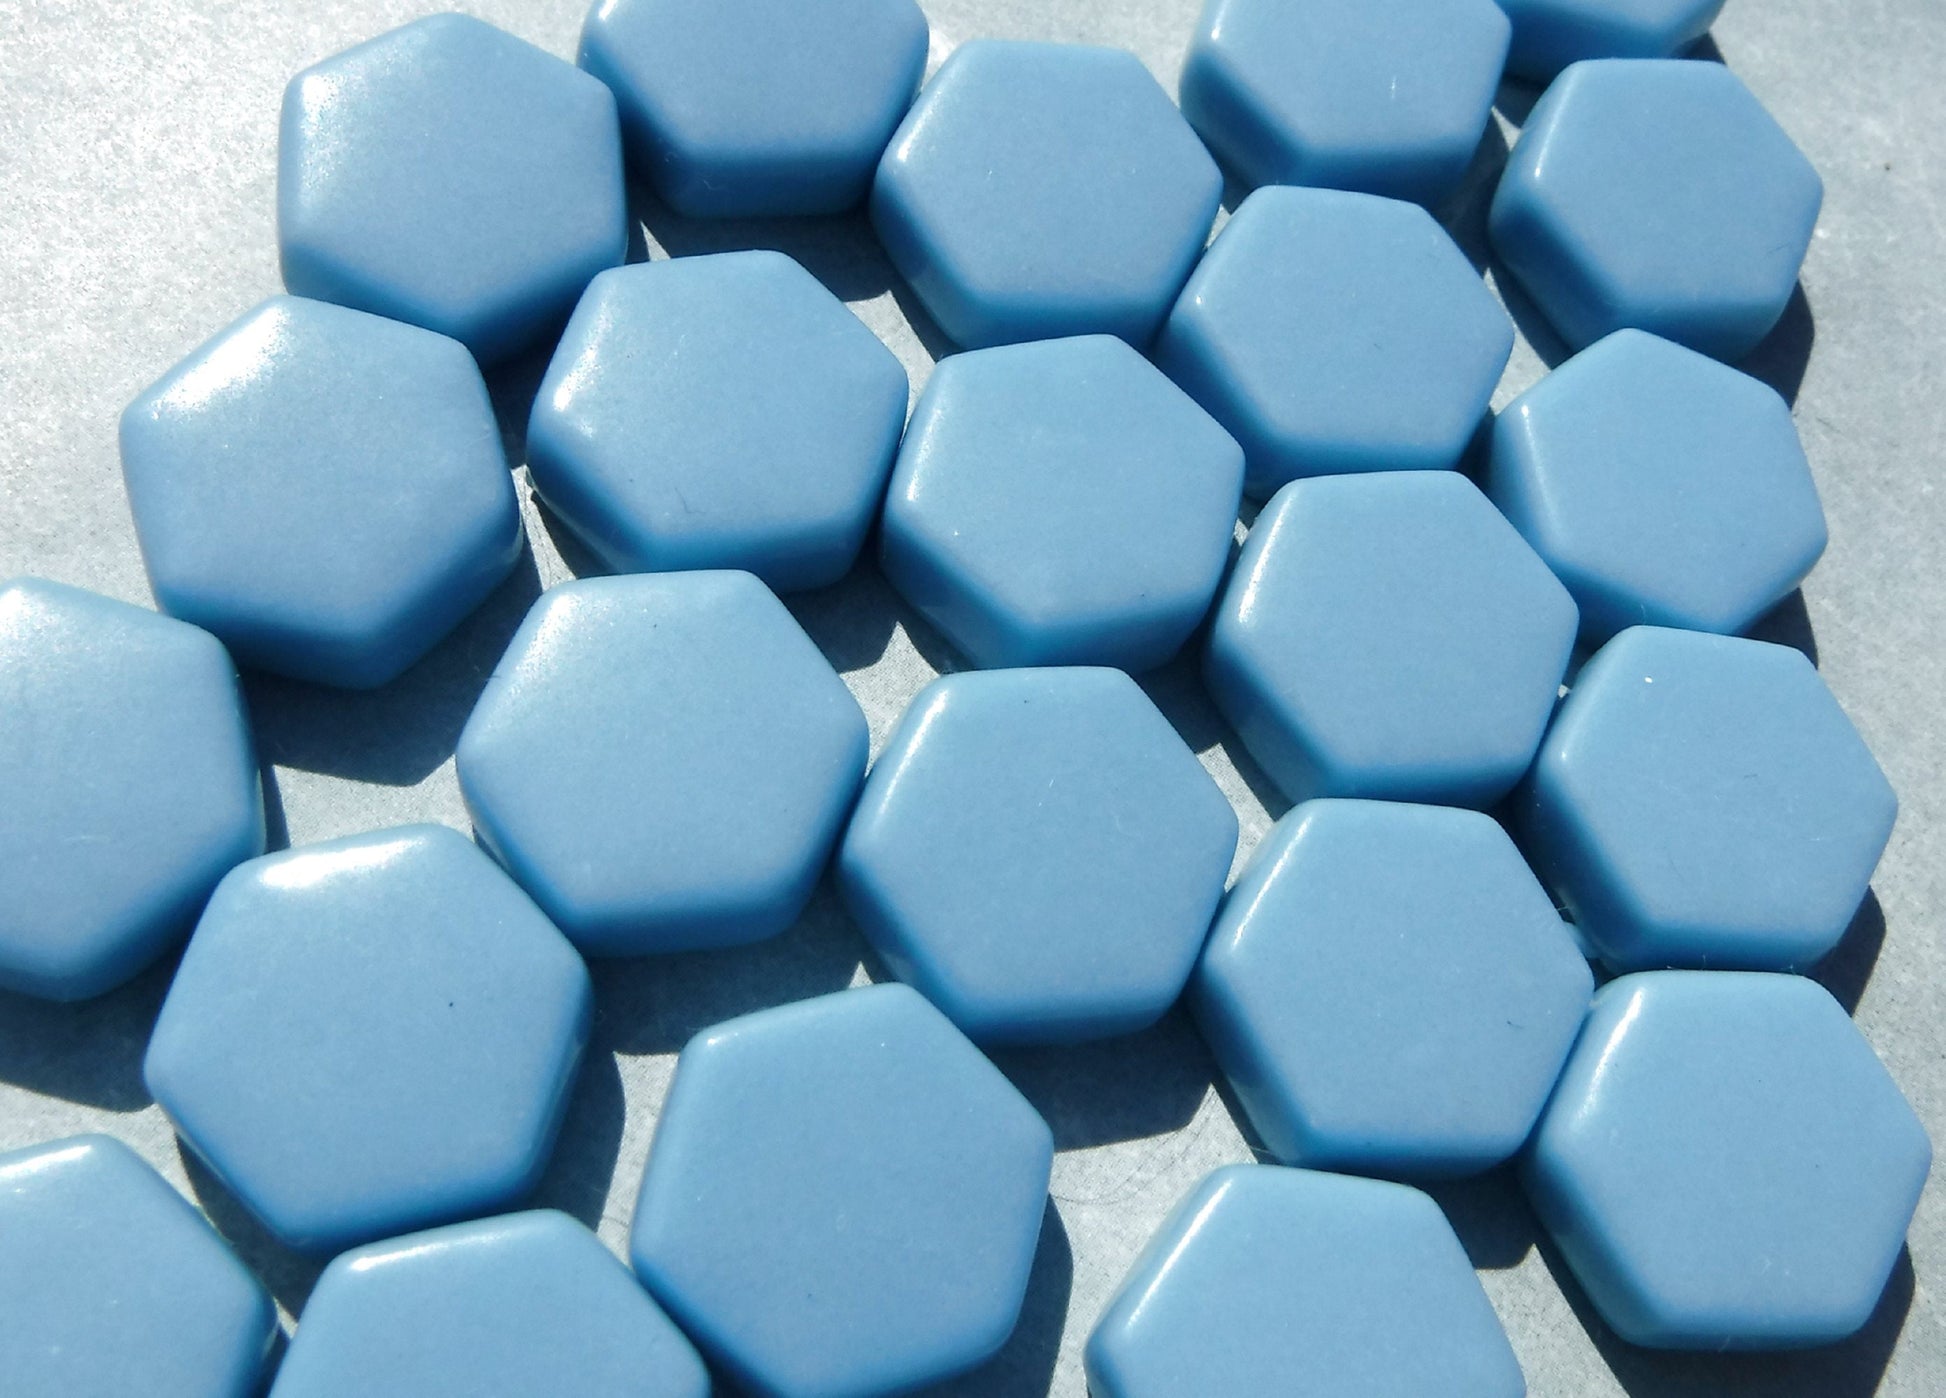 Light Blue Hexagon Mosaic Tiles - 15mm - 100g Opaque Glass Tiles in Hawaiian Blue